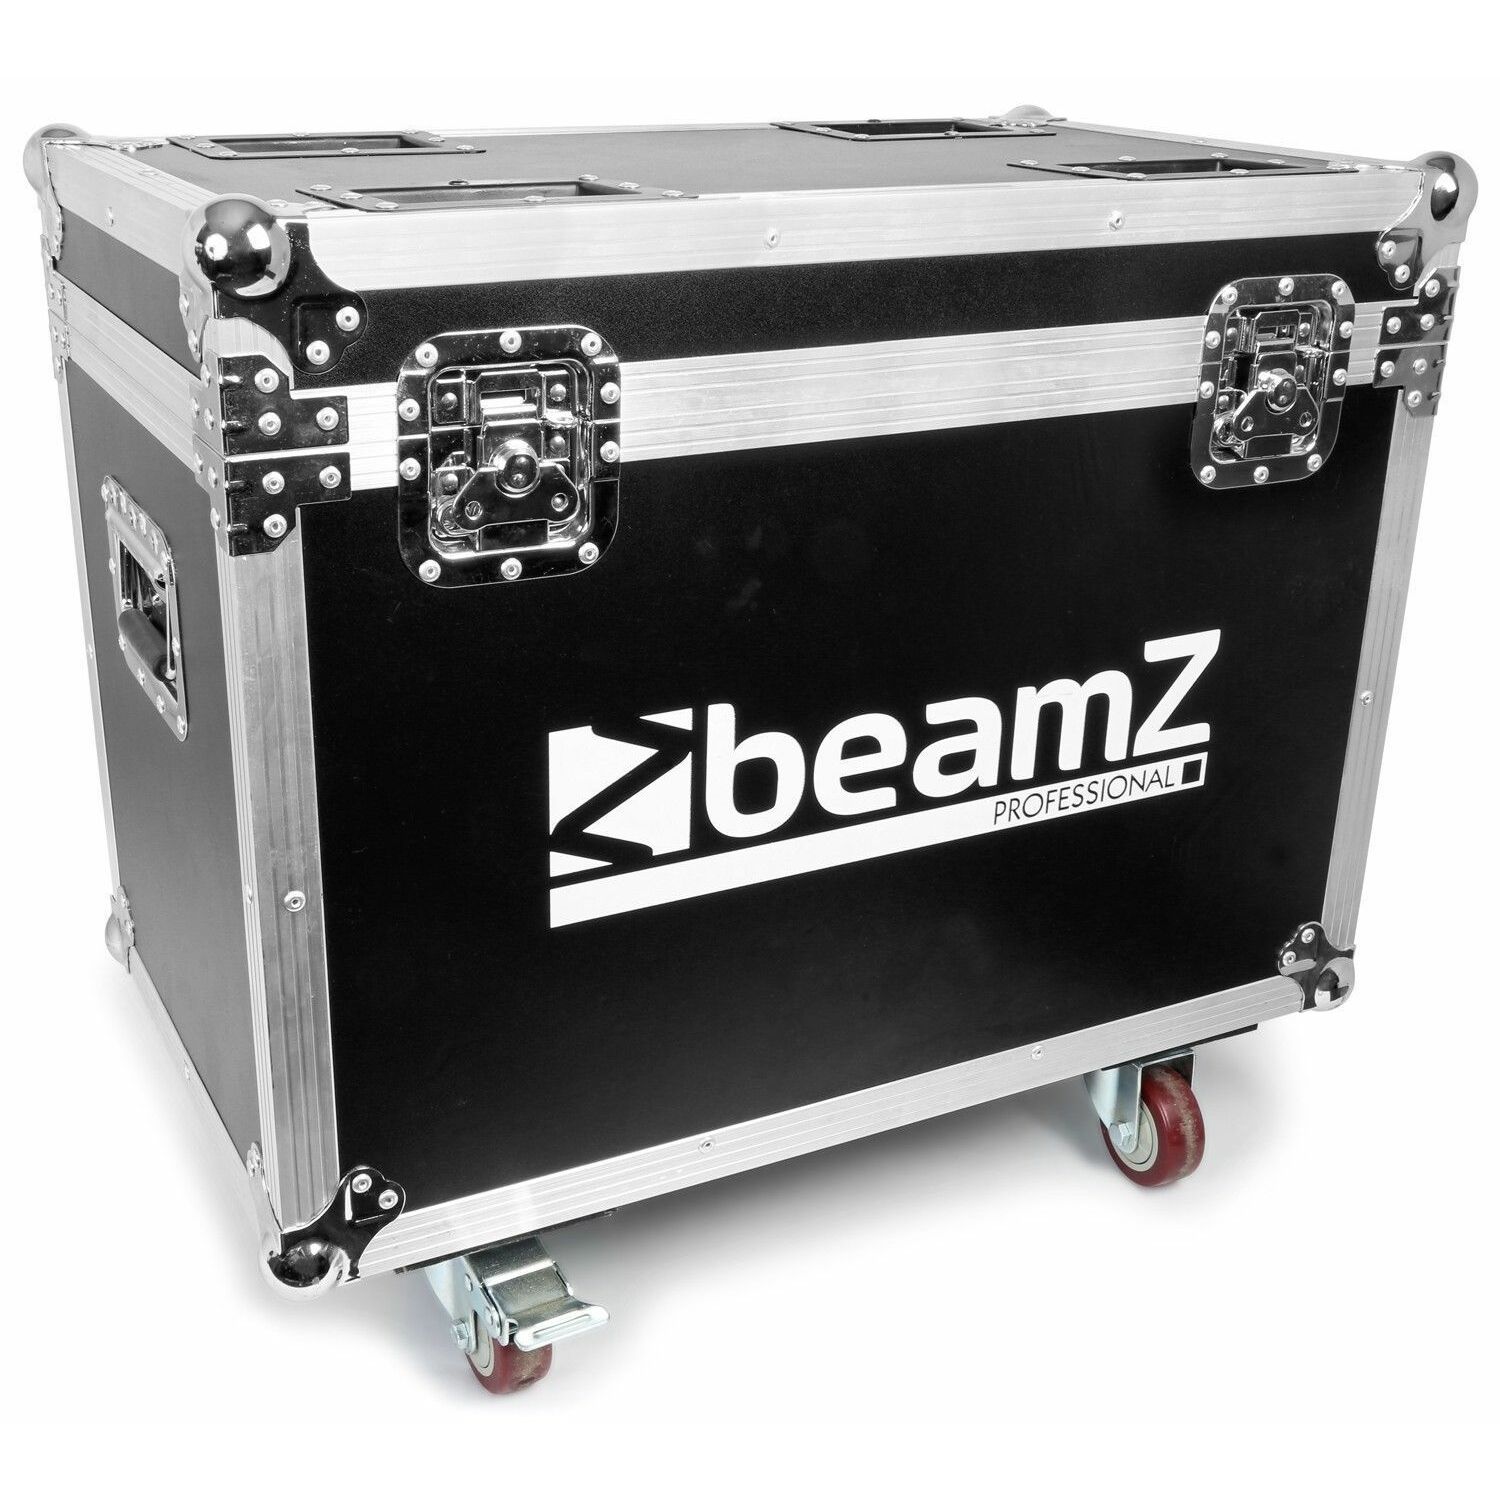 BeamZ Professional BeamZ Flightcase voor twee stuks IGNITE180 series Moving Heads